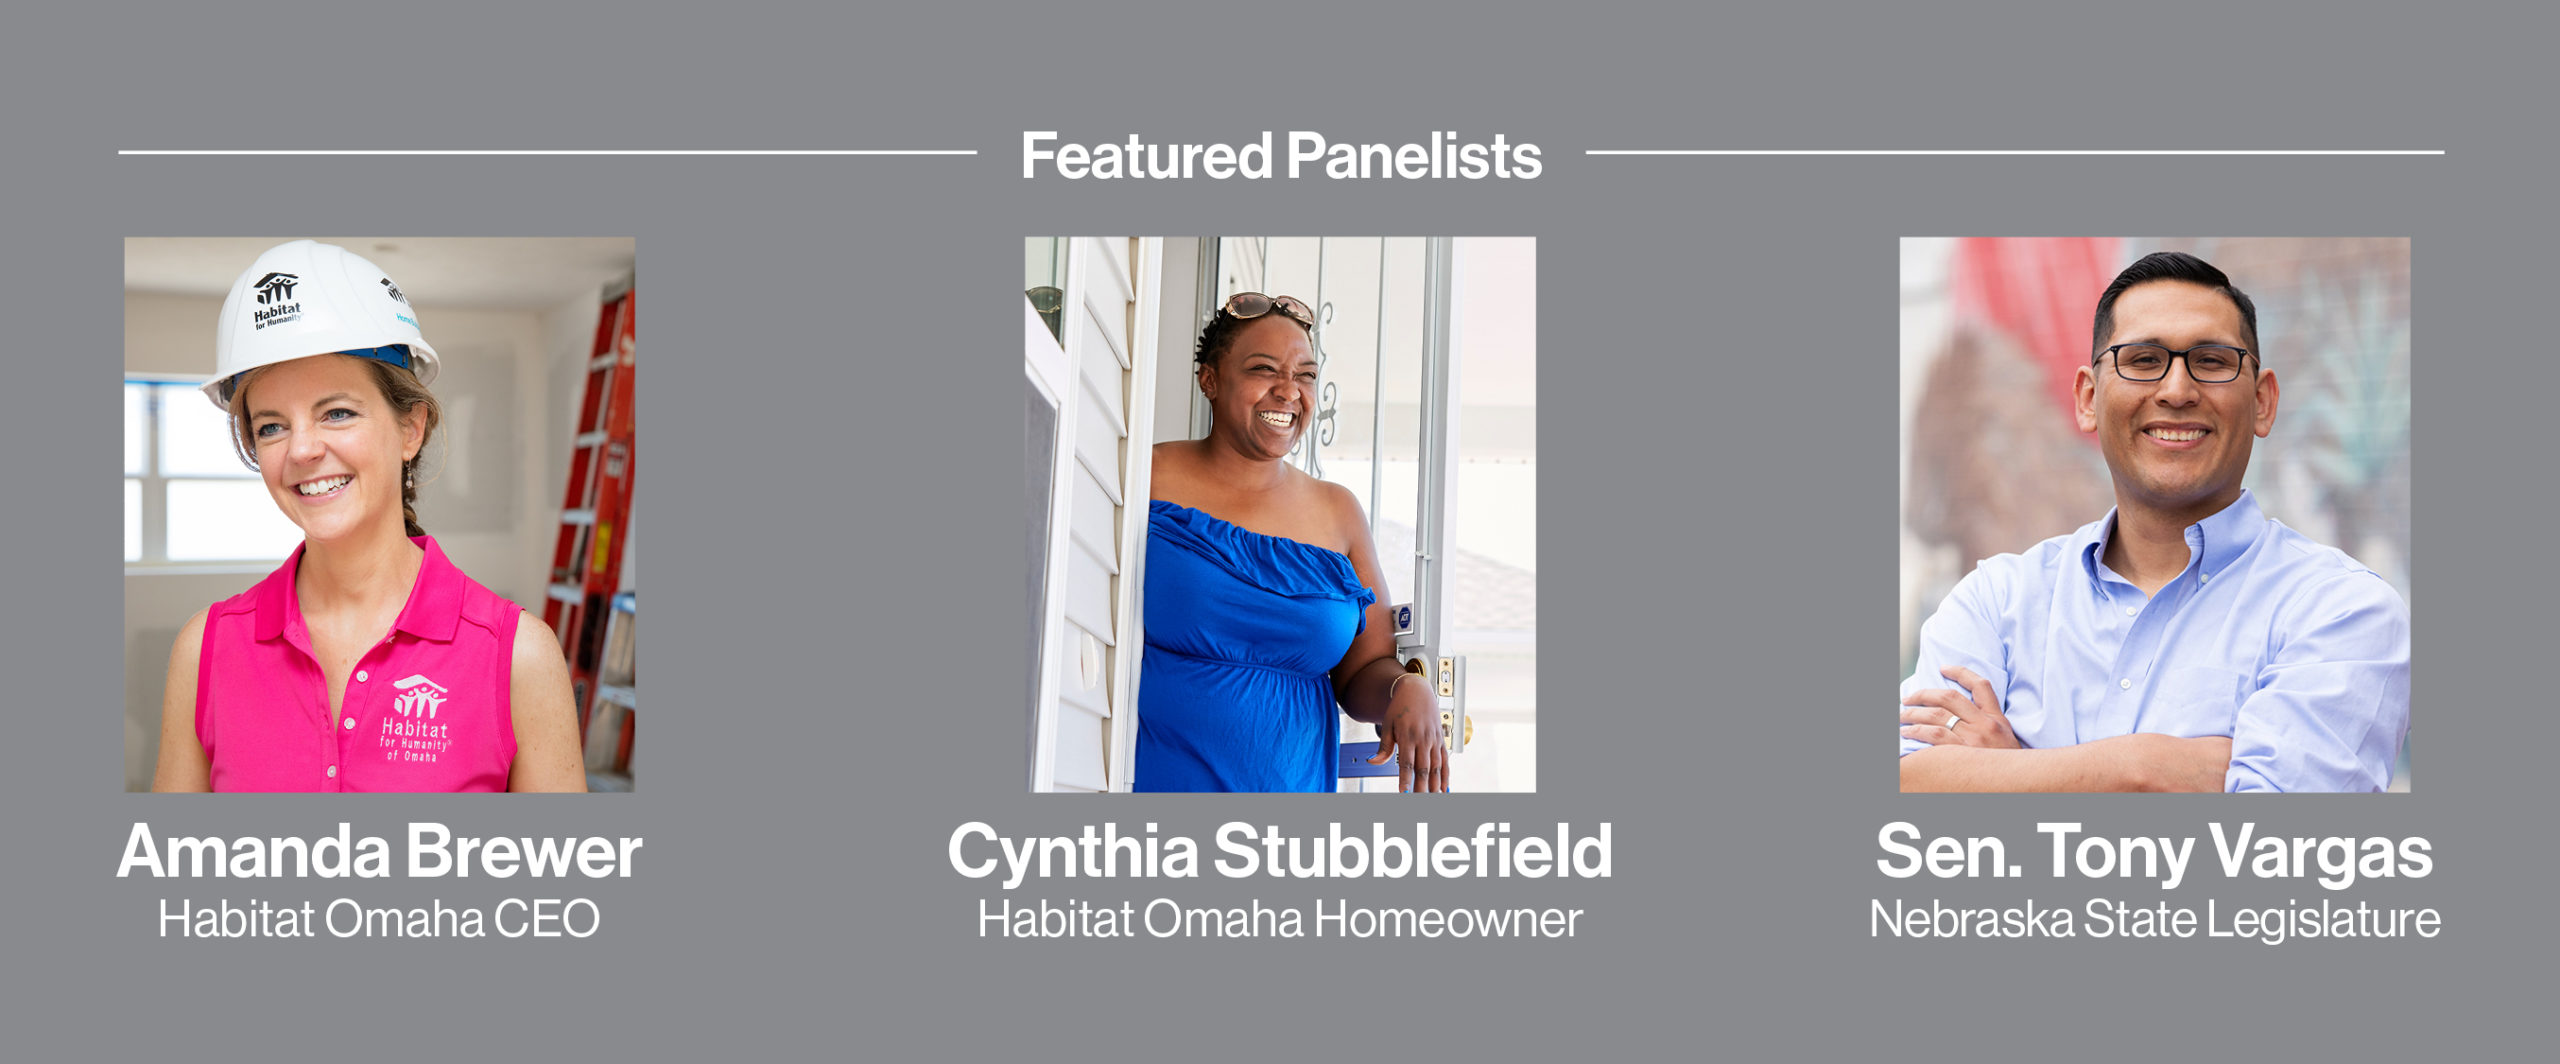 Featured Panelists: Amanda Brewer, Habitat Omaha CEO; Cynthia Stubblefield, Habitat Omaha Homeowner; and Sen. Tony Vargas, Nebraska State Legislature